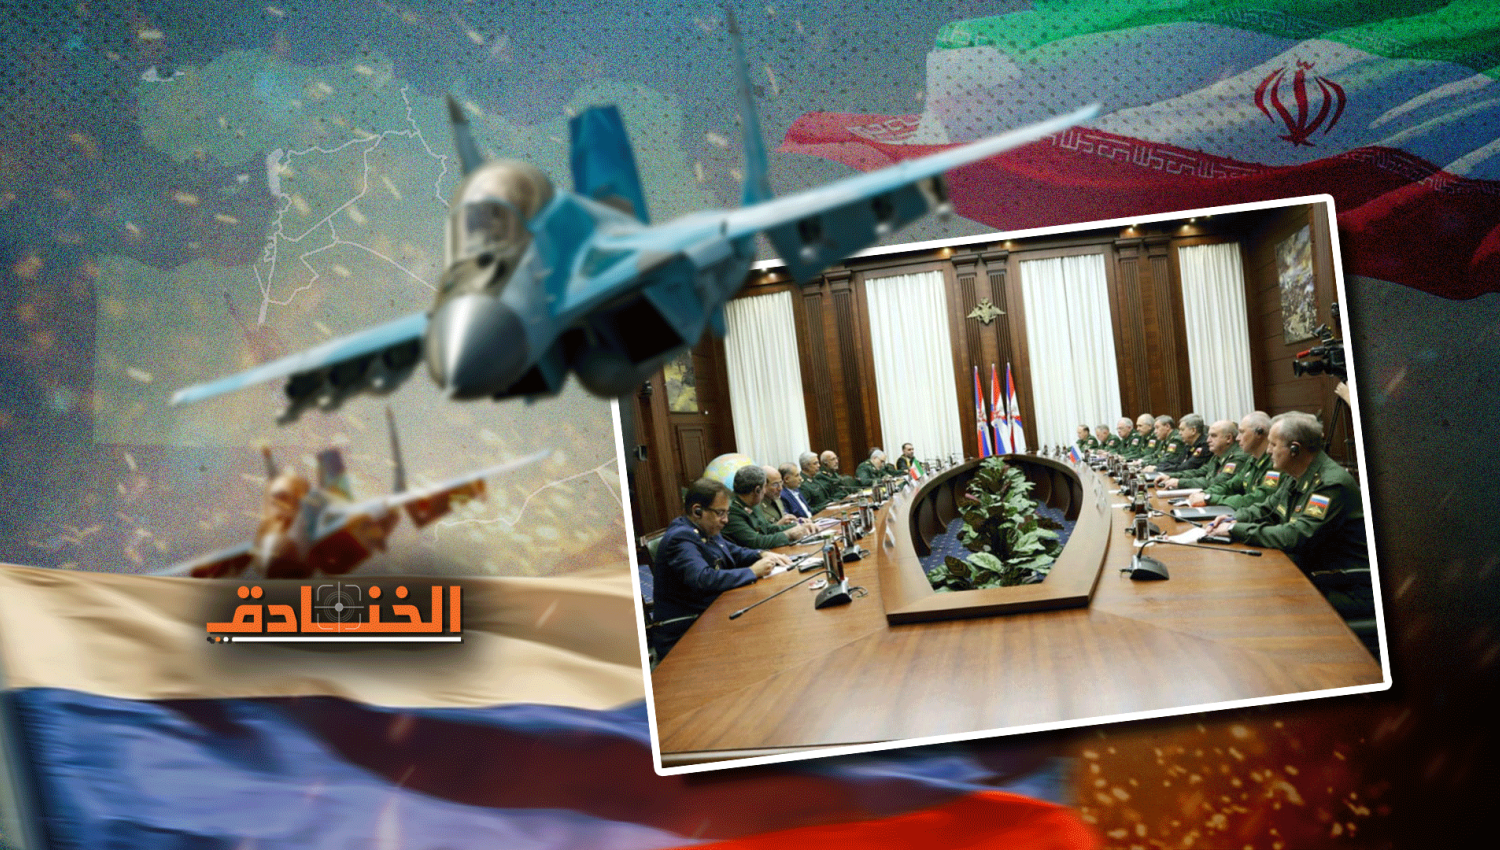 فورين بوليسي: ماذا تعني صفقات الأسلحة الروسية الإيرانية بالنسبة للشرق الأوسط